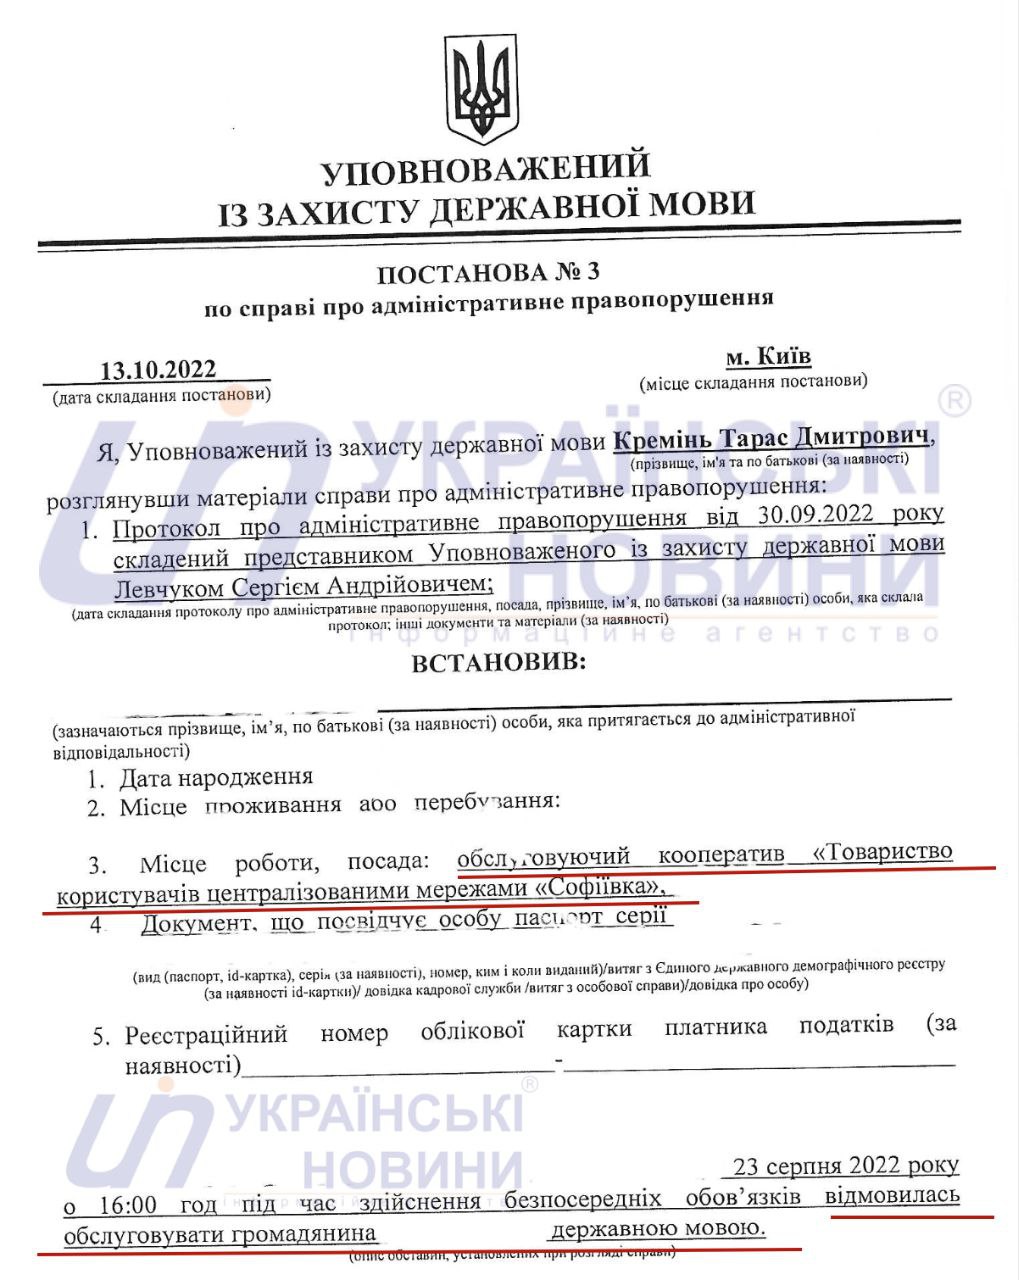 Языковой омбудсмен Тарас Креминь оштрафовал второго человека по новому языковому закону